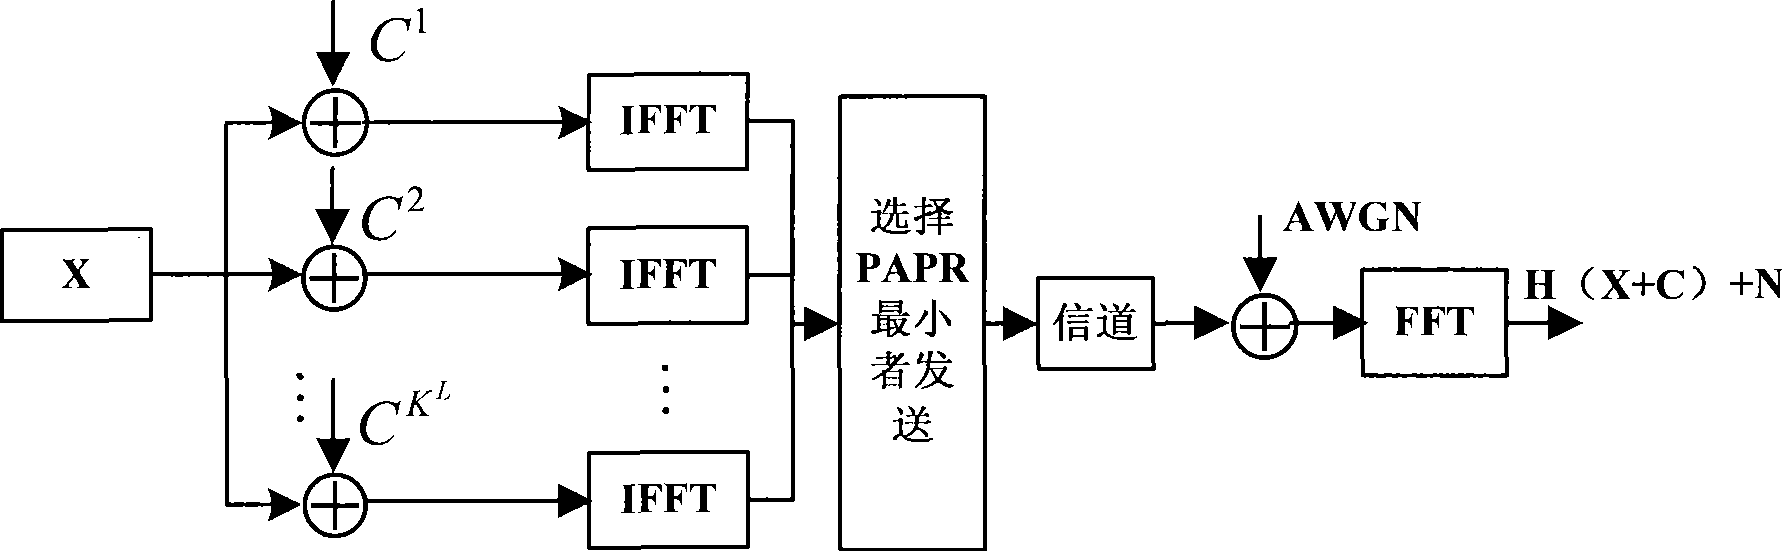 Method for lowering PAR of OFDM system based on virtual carrier preservation algorithm